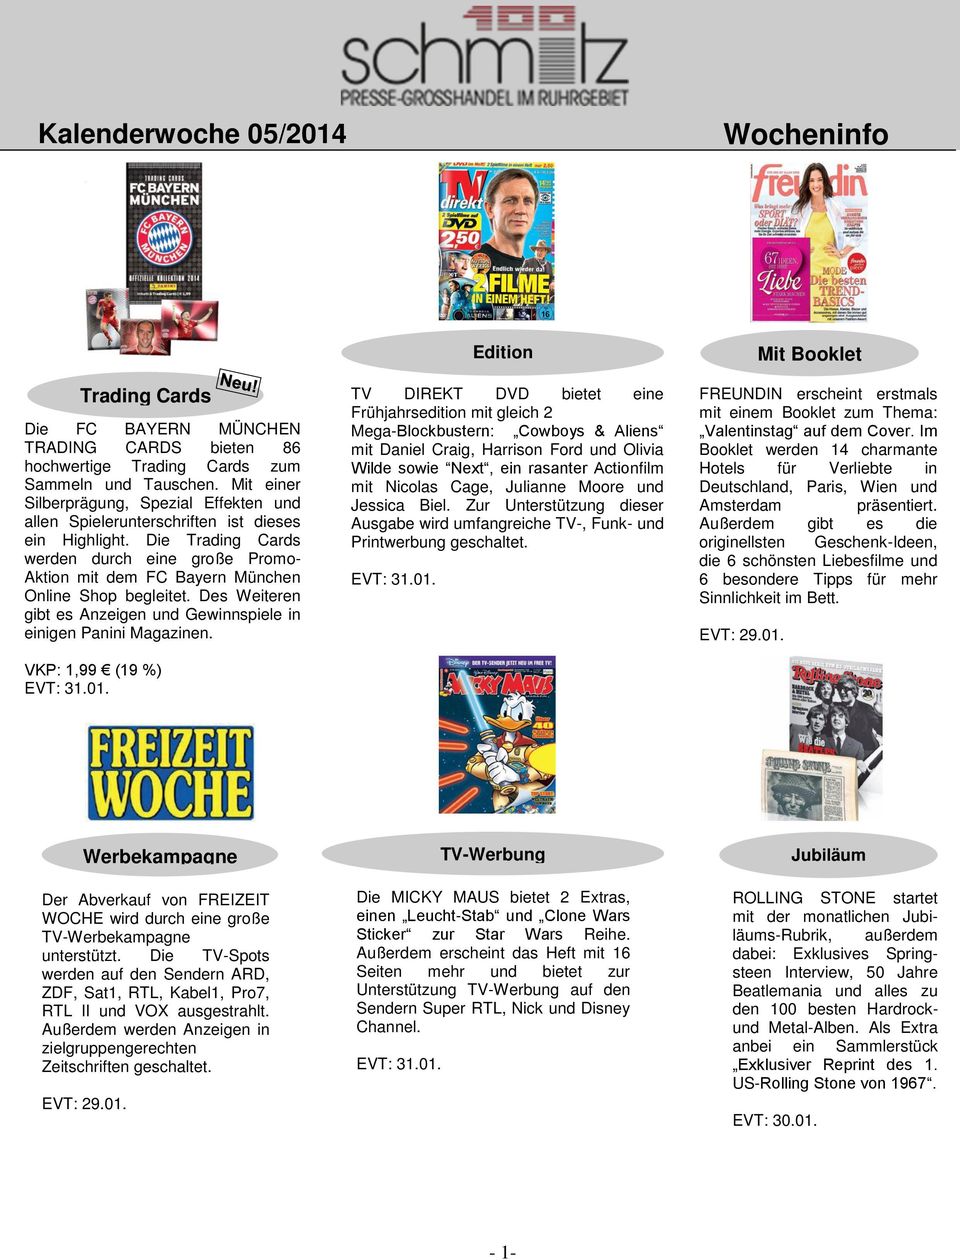 Die Trading Cards werden durch eine große Promo- Aktion mit dem FC Bayern München Online Shop begleitet. Des Weiteren gibt es Anzeigen und Gewinnspiele in einigen Panini Magazinen.